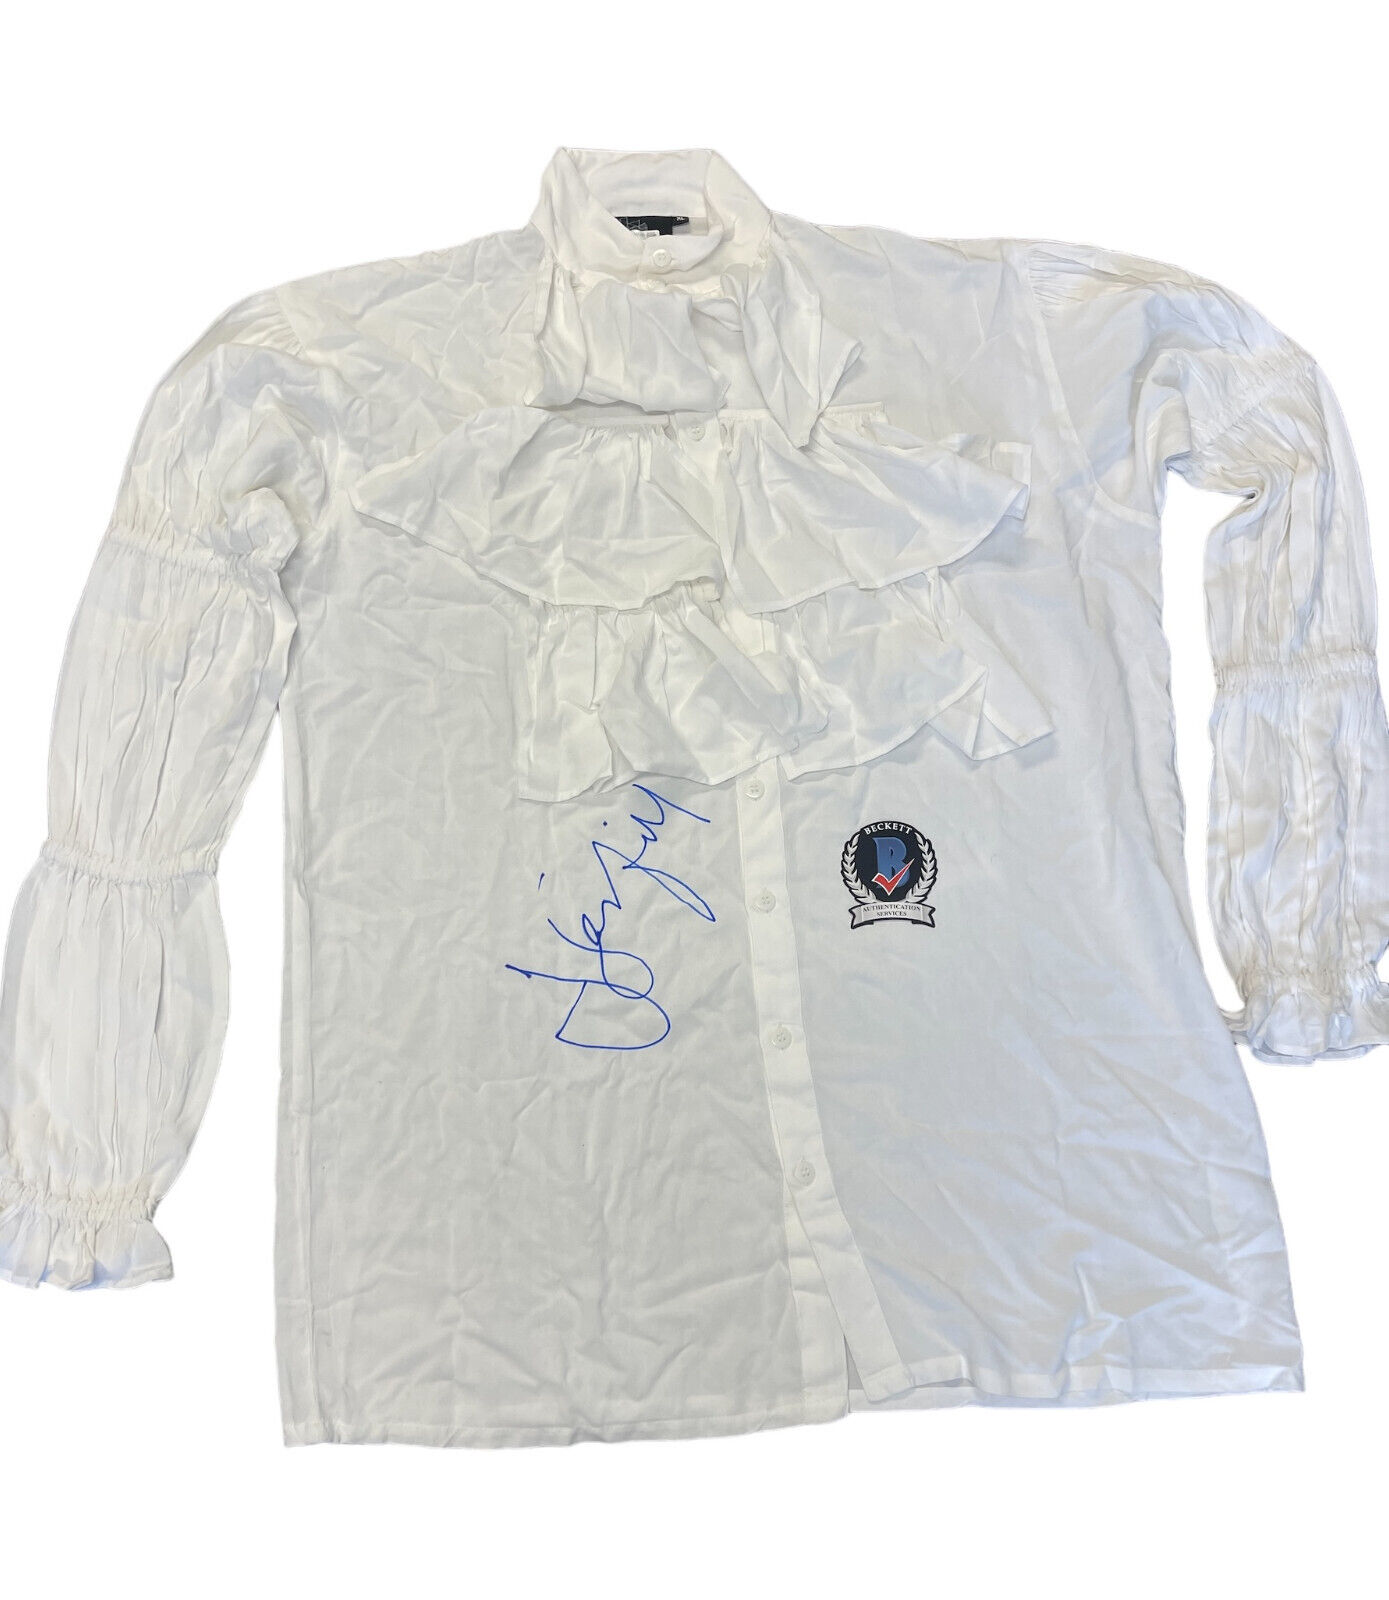 Jerry Seinfeld Signed Autograph Puffy Shirt BAS Beckett Seinfeld